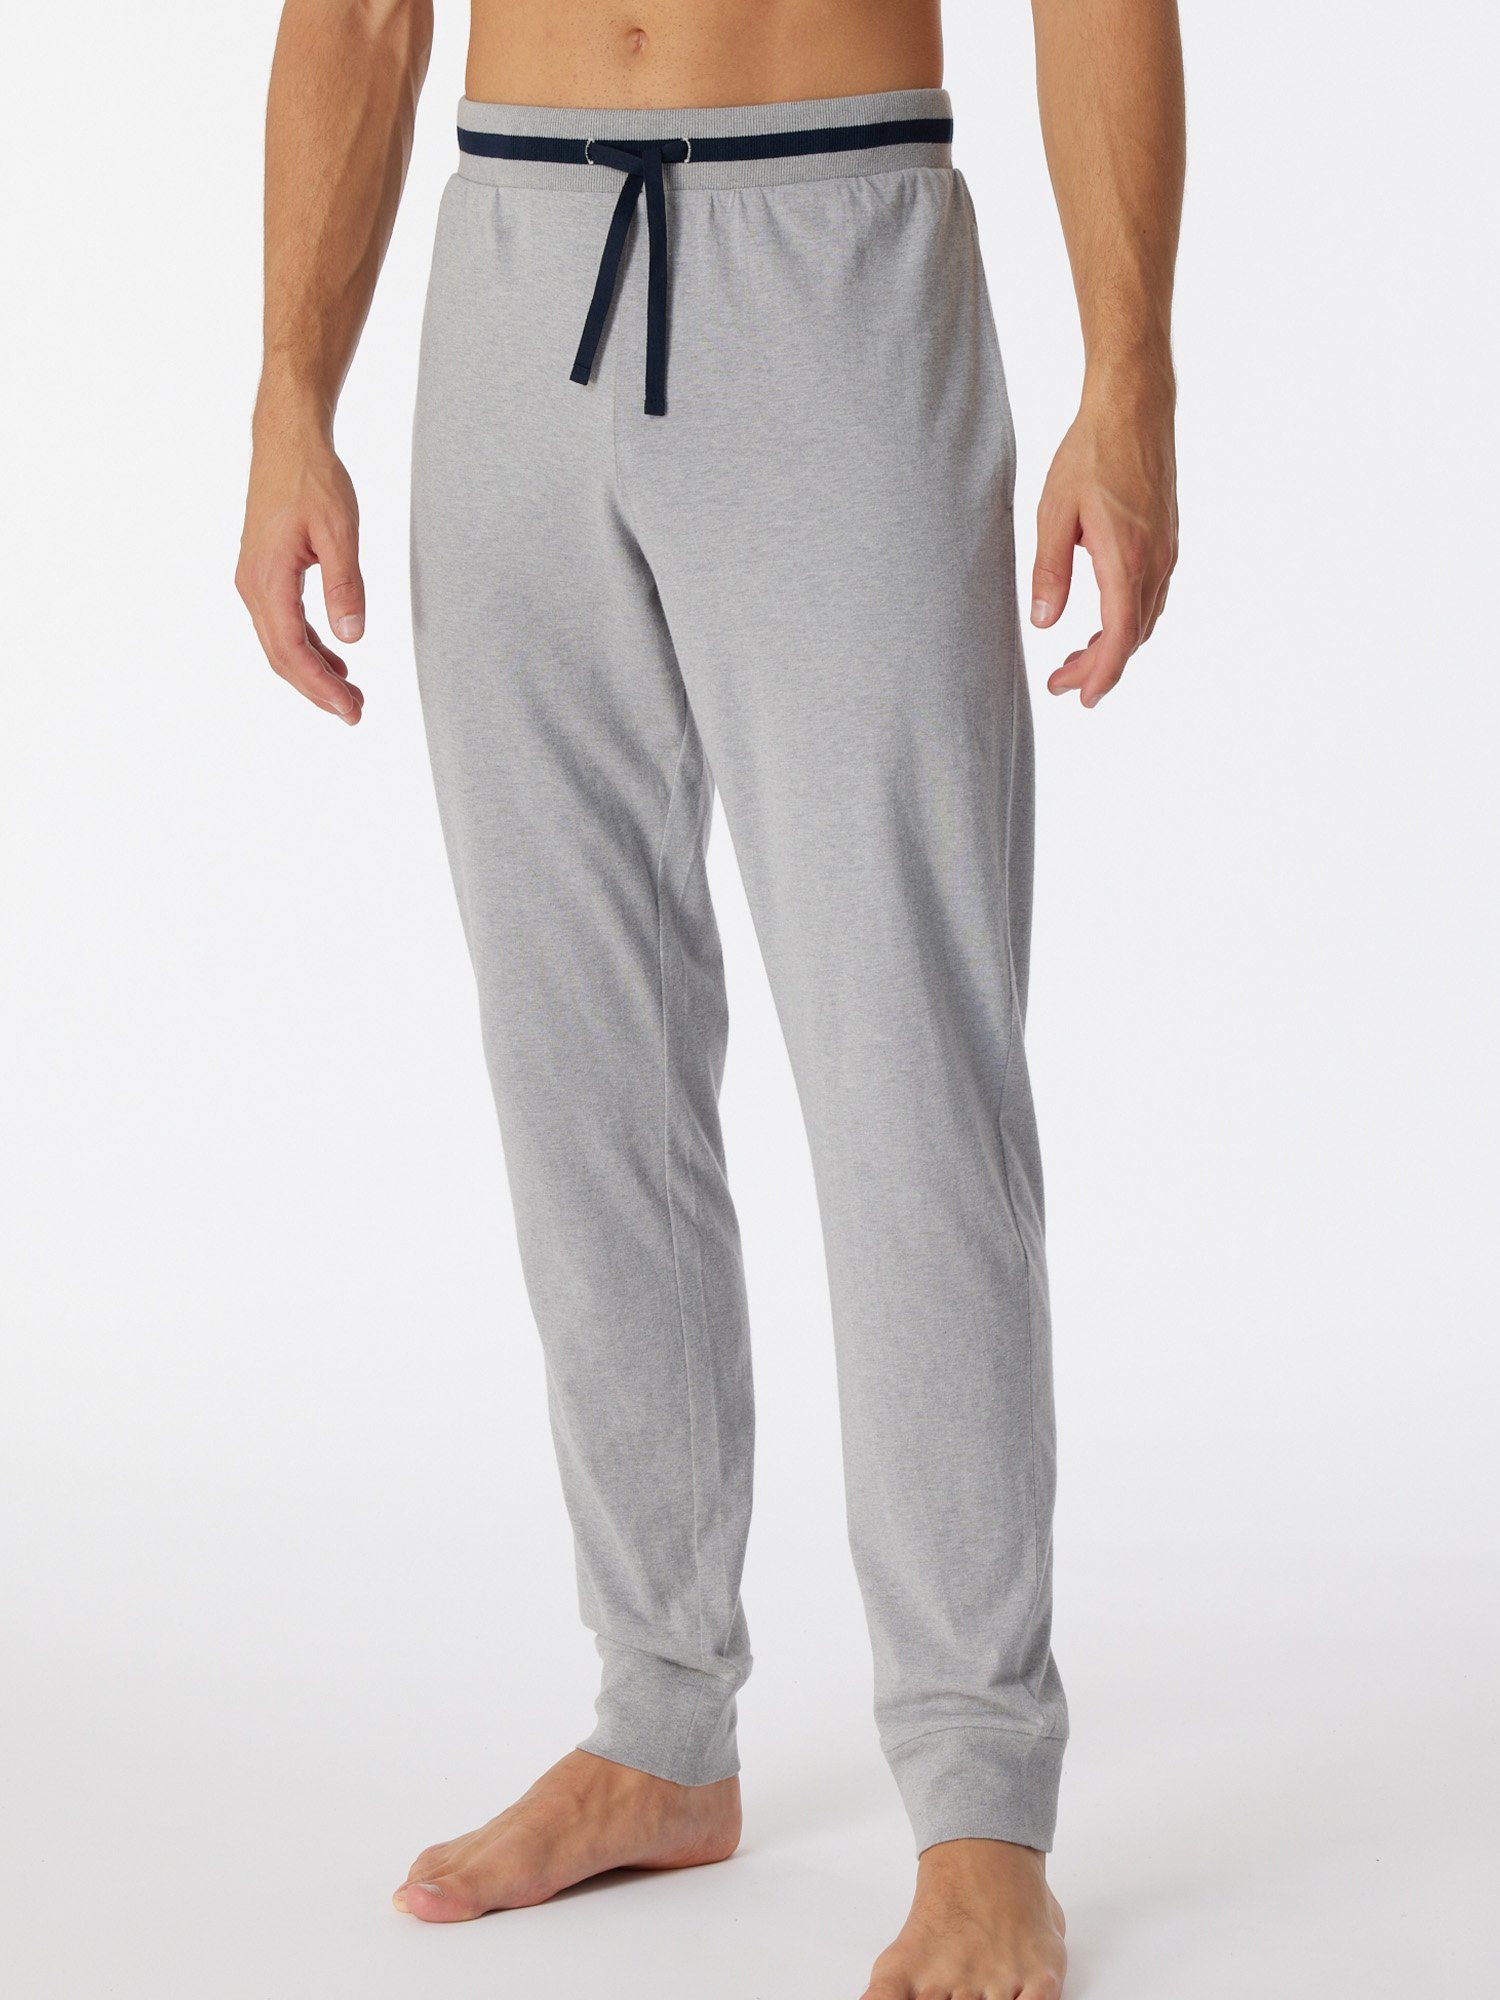 Pyjamahose pyjama grau-mel. Relax & schlaf-hose Mix schlaf-hose Schiesser